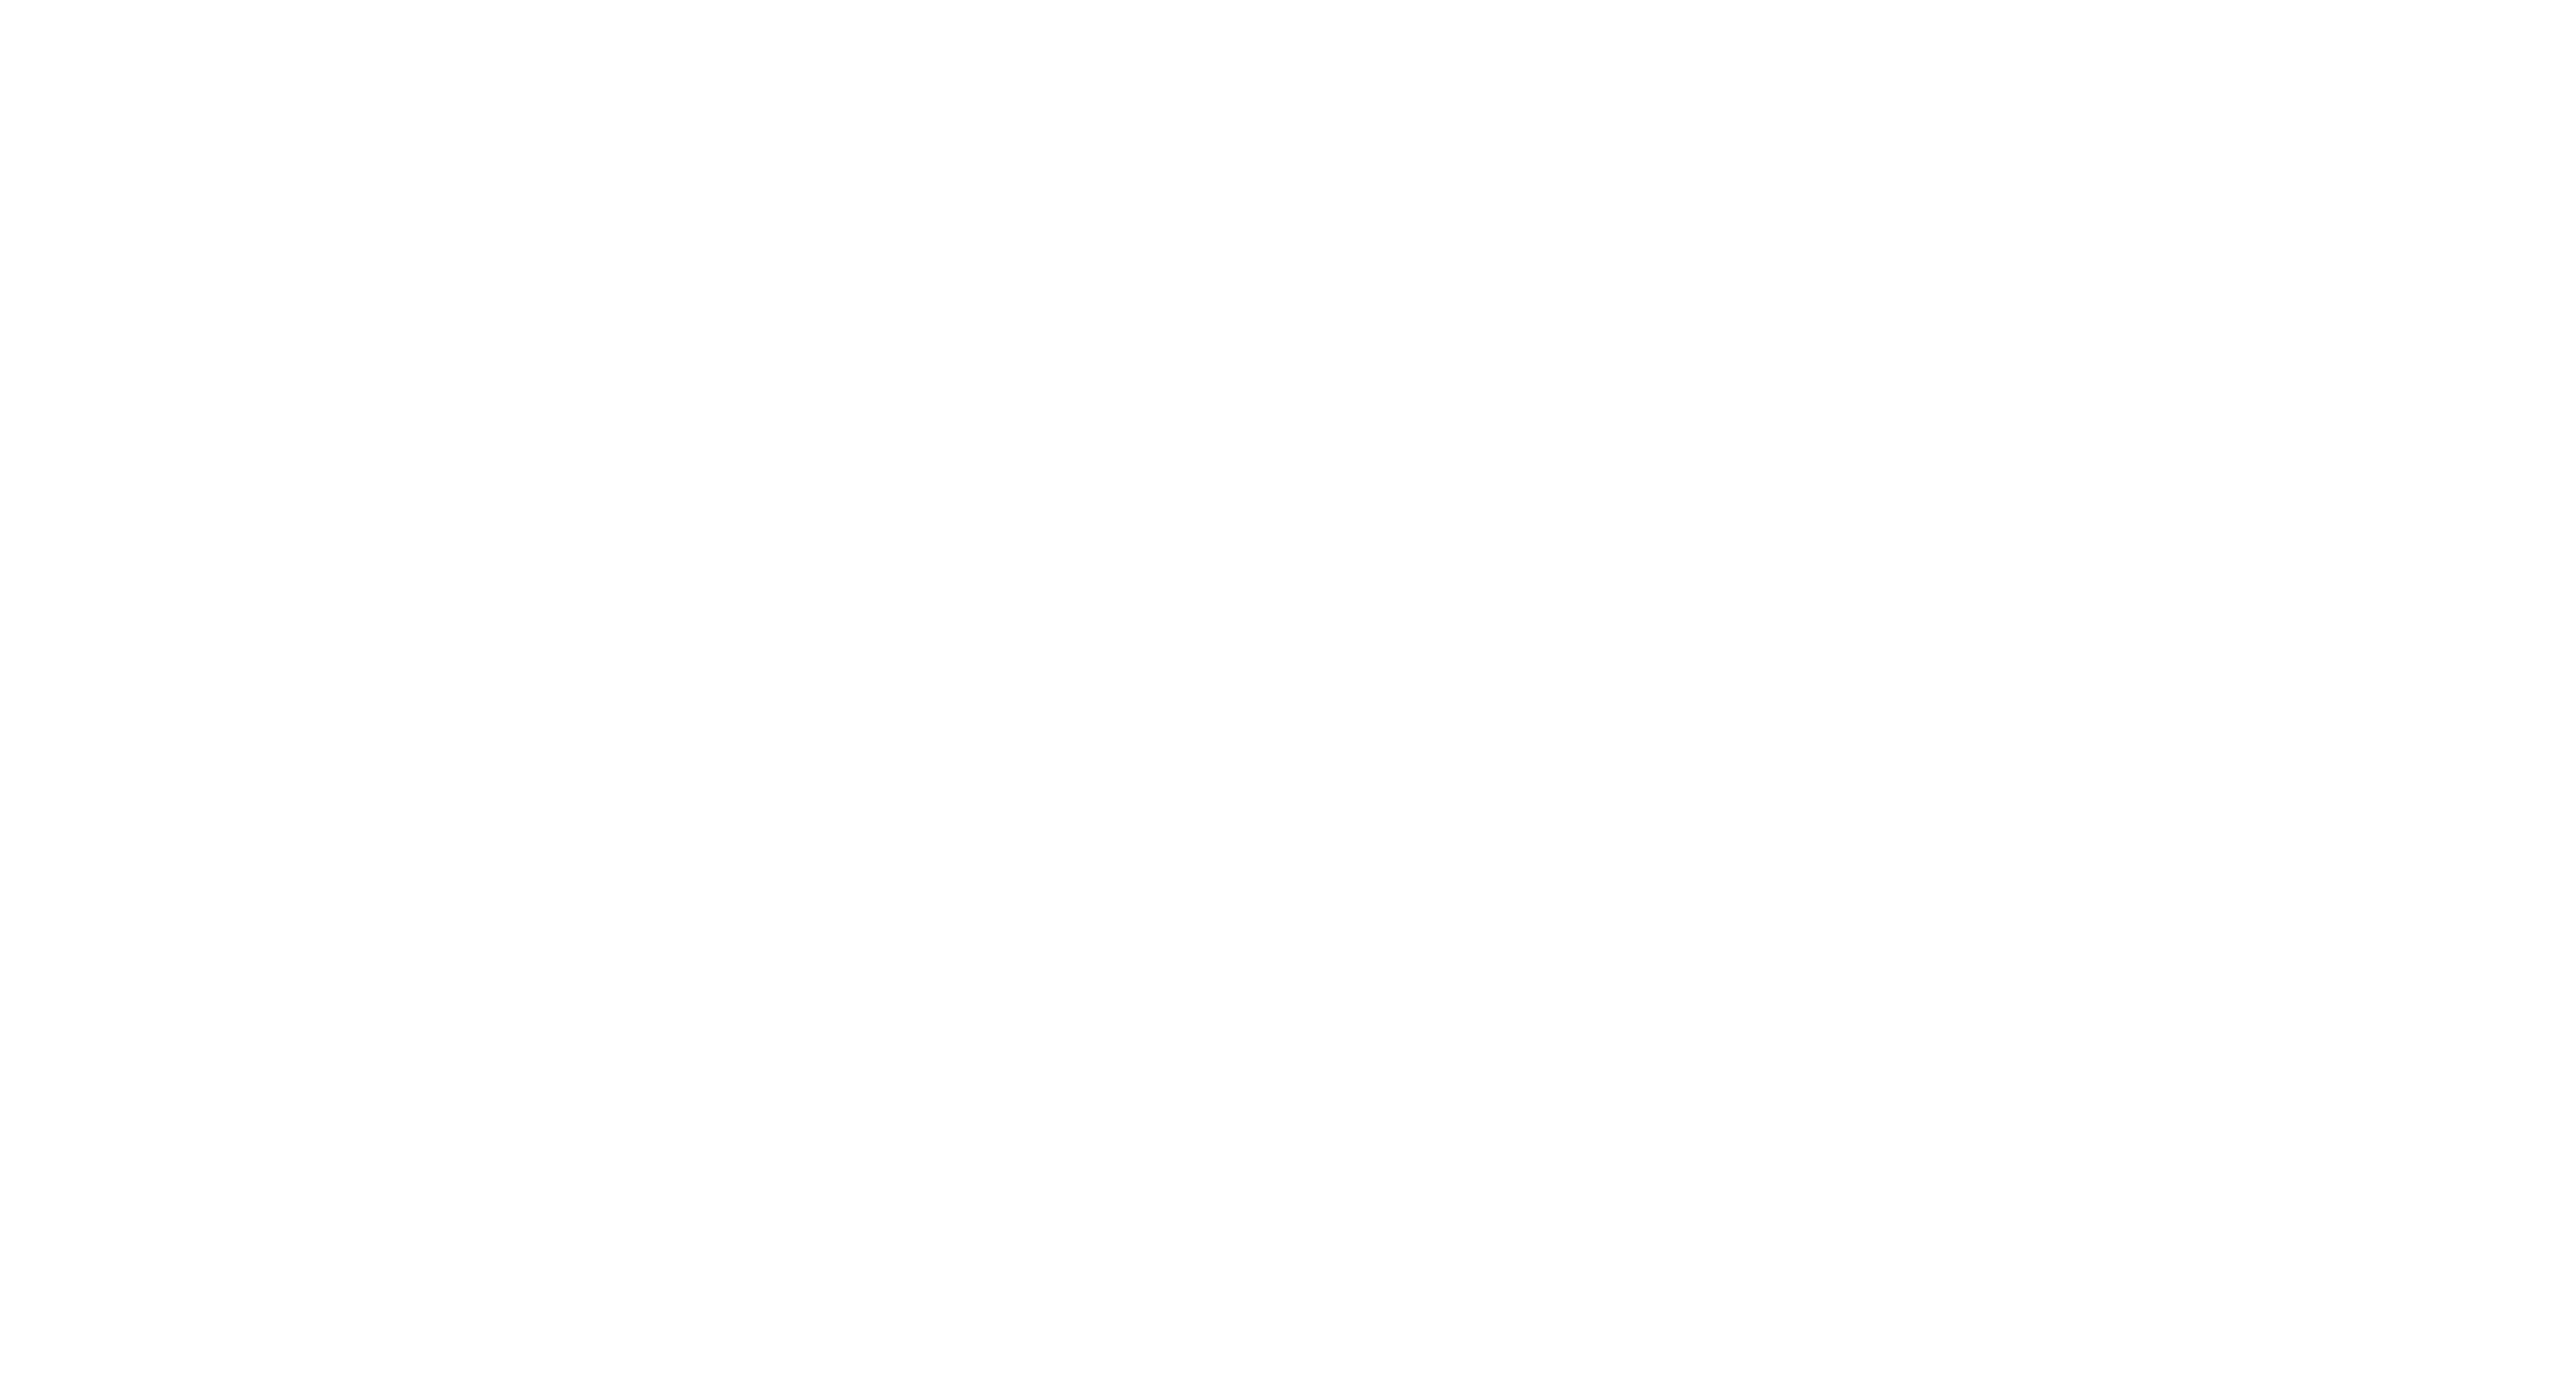 Shane-Spencer-white-high-res copy